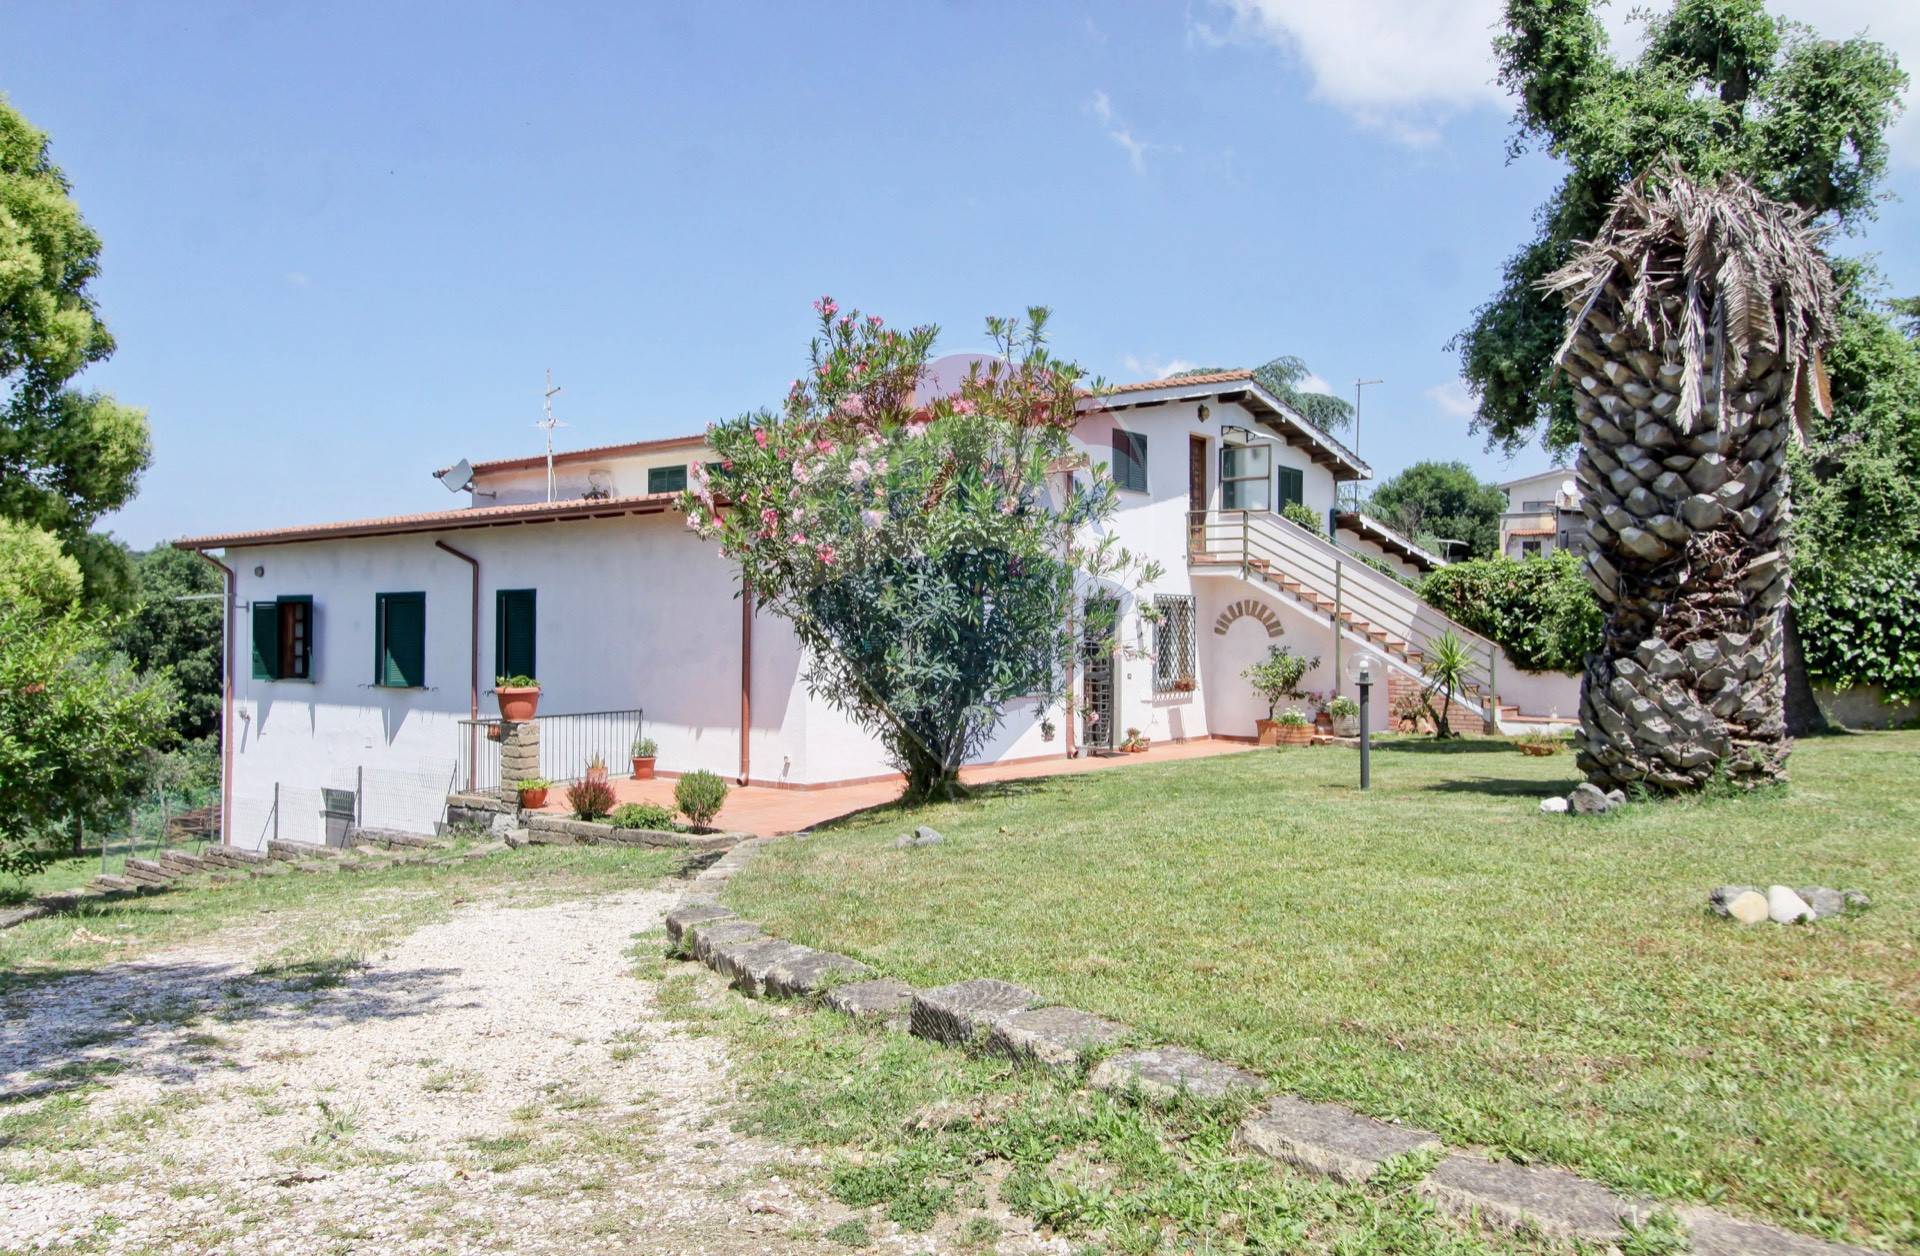 Villa in vendita a Formello, 7 locali, prezzo € 449.000 | CambioCasa.it